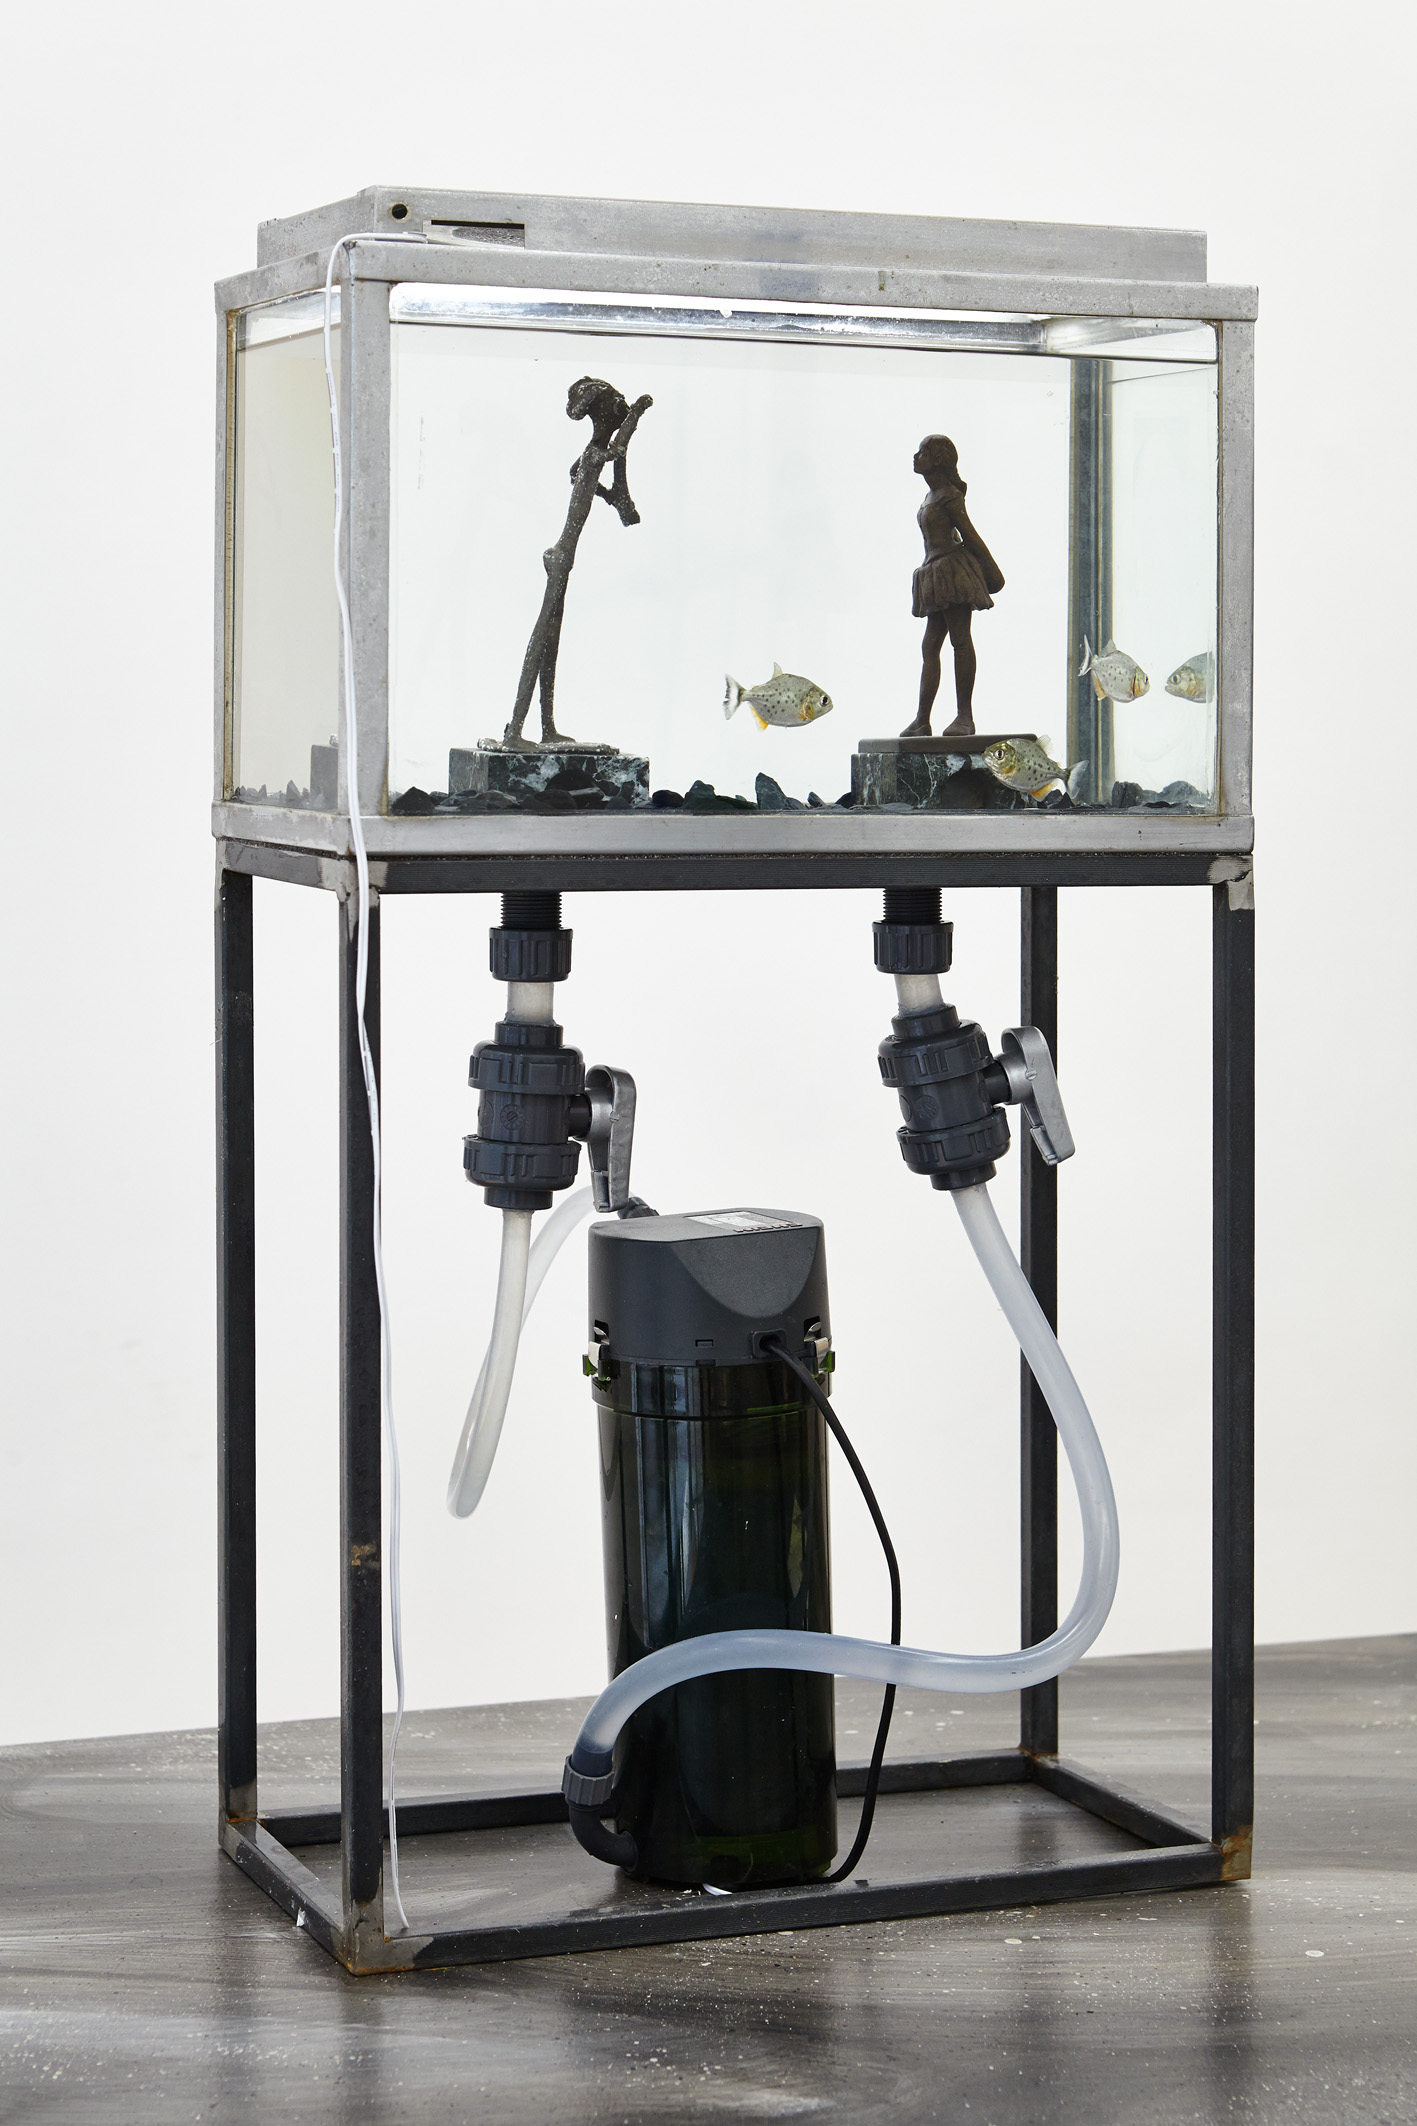  Thomas Mailaender,  Fish Museum#4 , 2017. Aquarium, métal, verre, 60 cm x 40 cm x 25 cm 